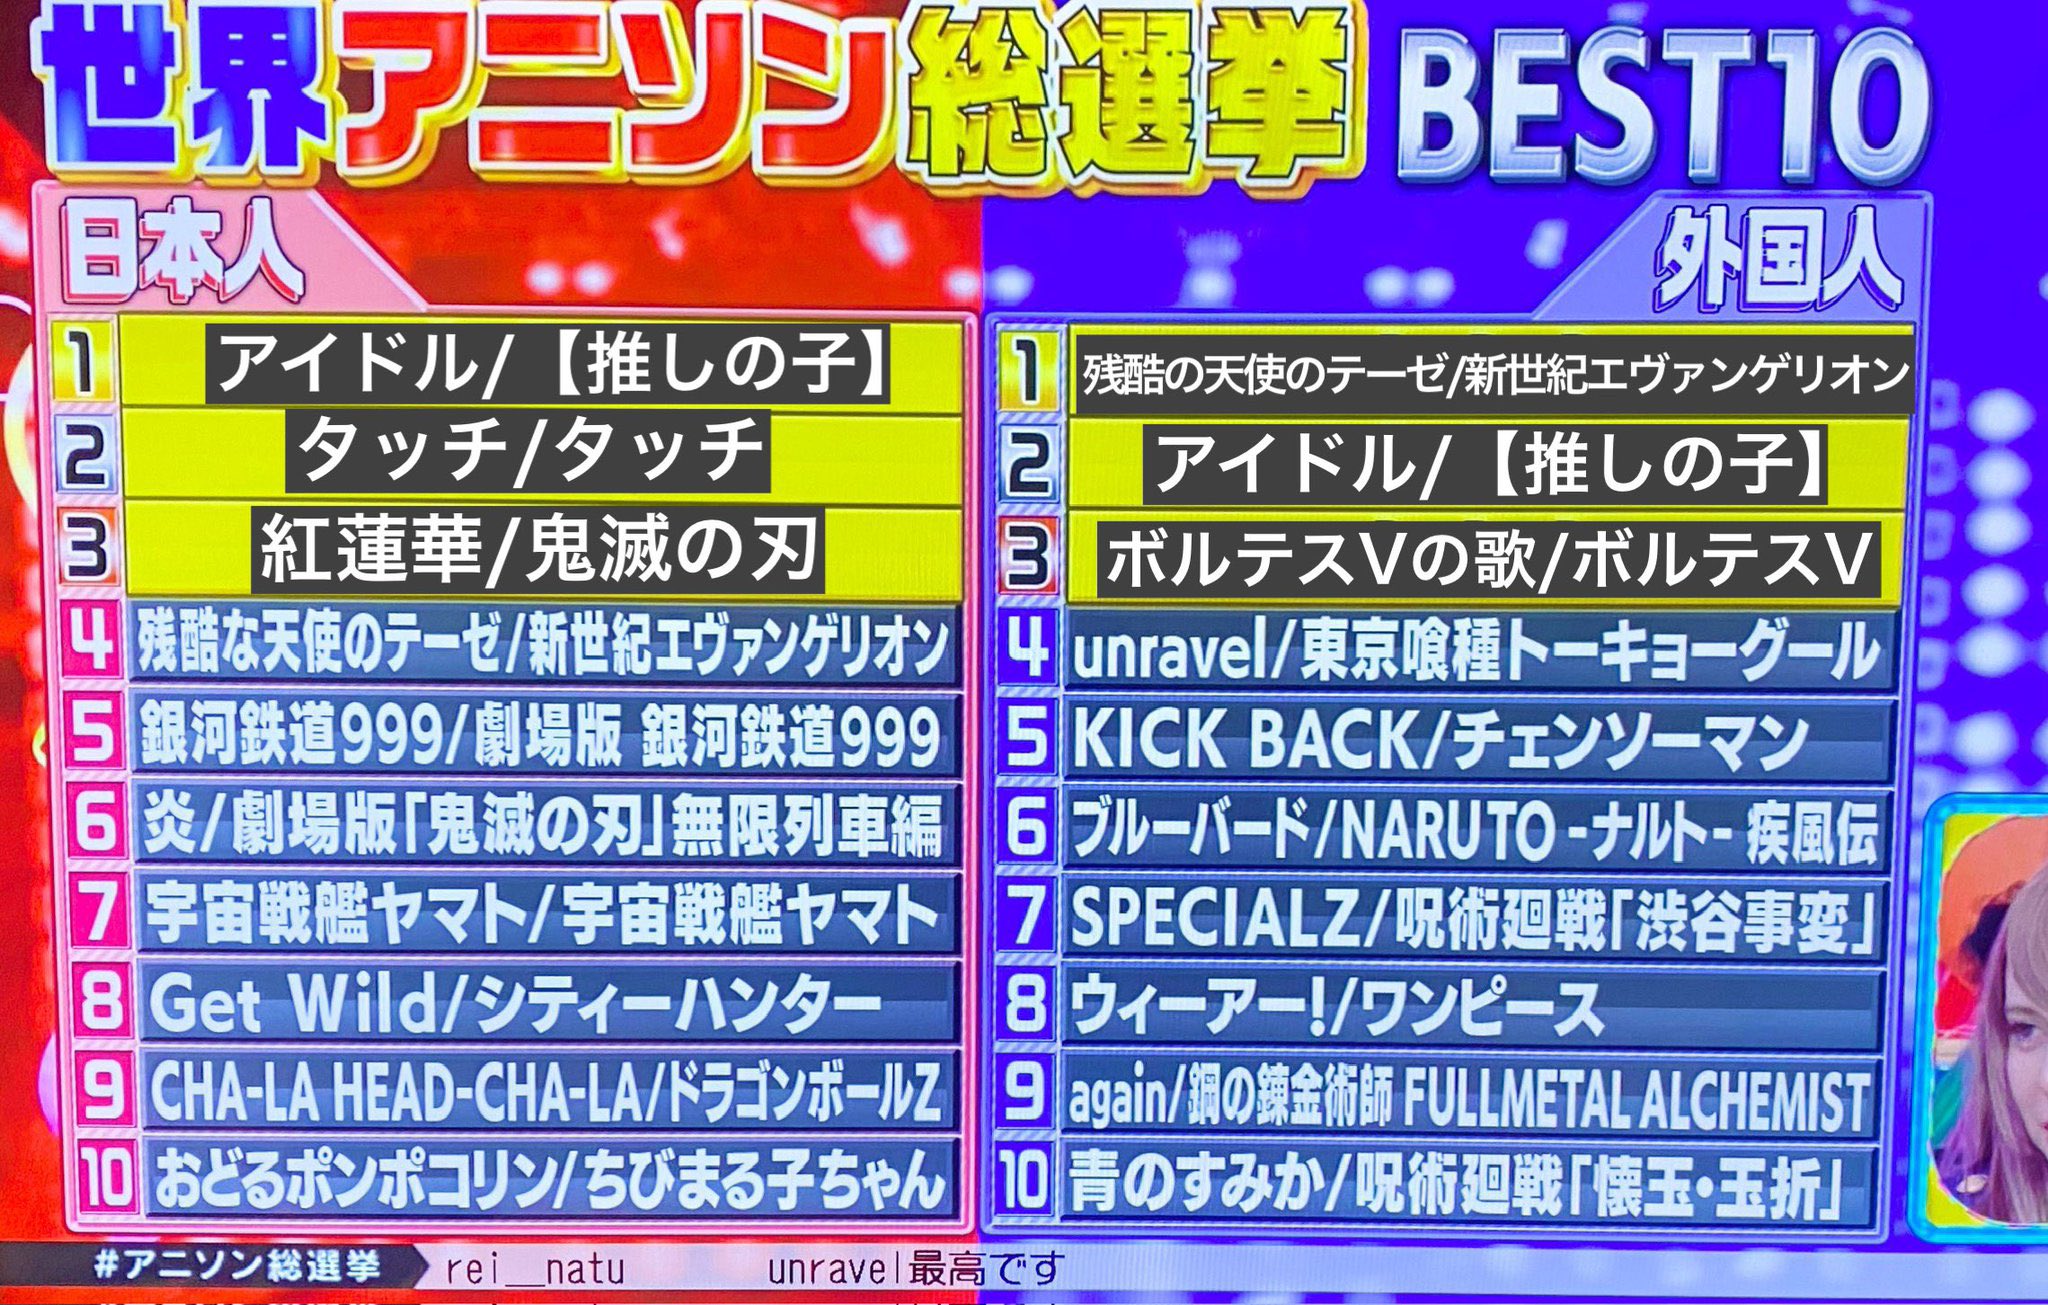 日本朝日电视台票选动漫歌曲排行 外国人最爱《残酷天使的行动纲领》